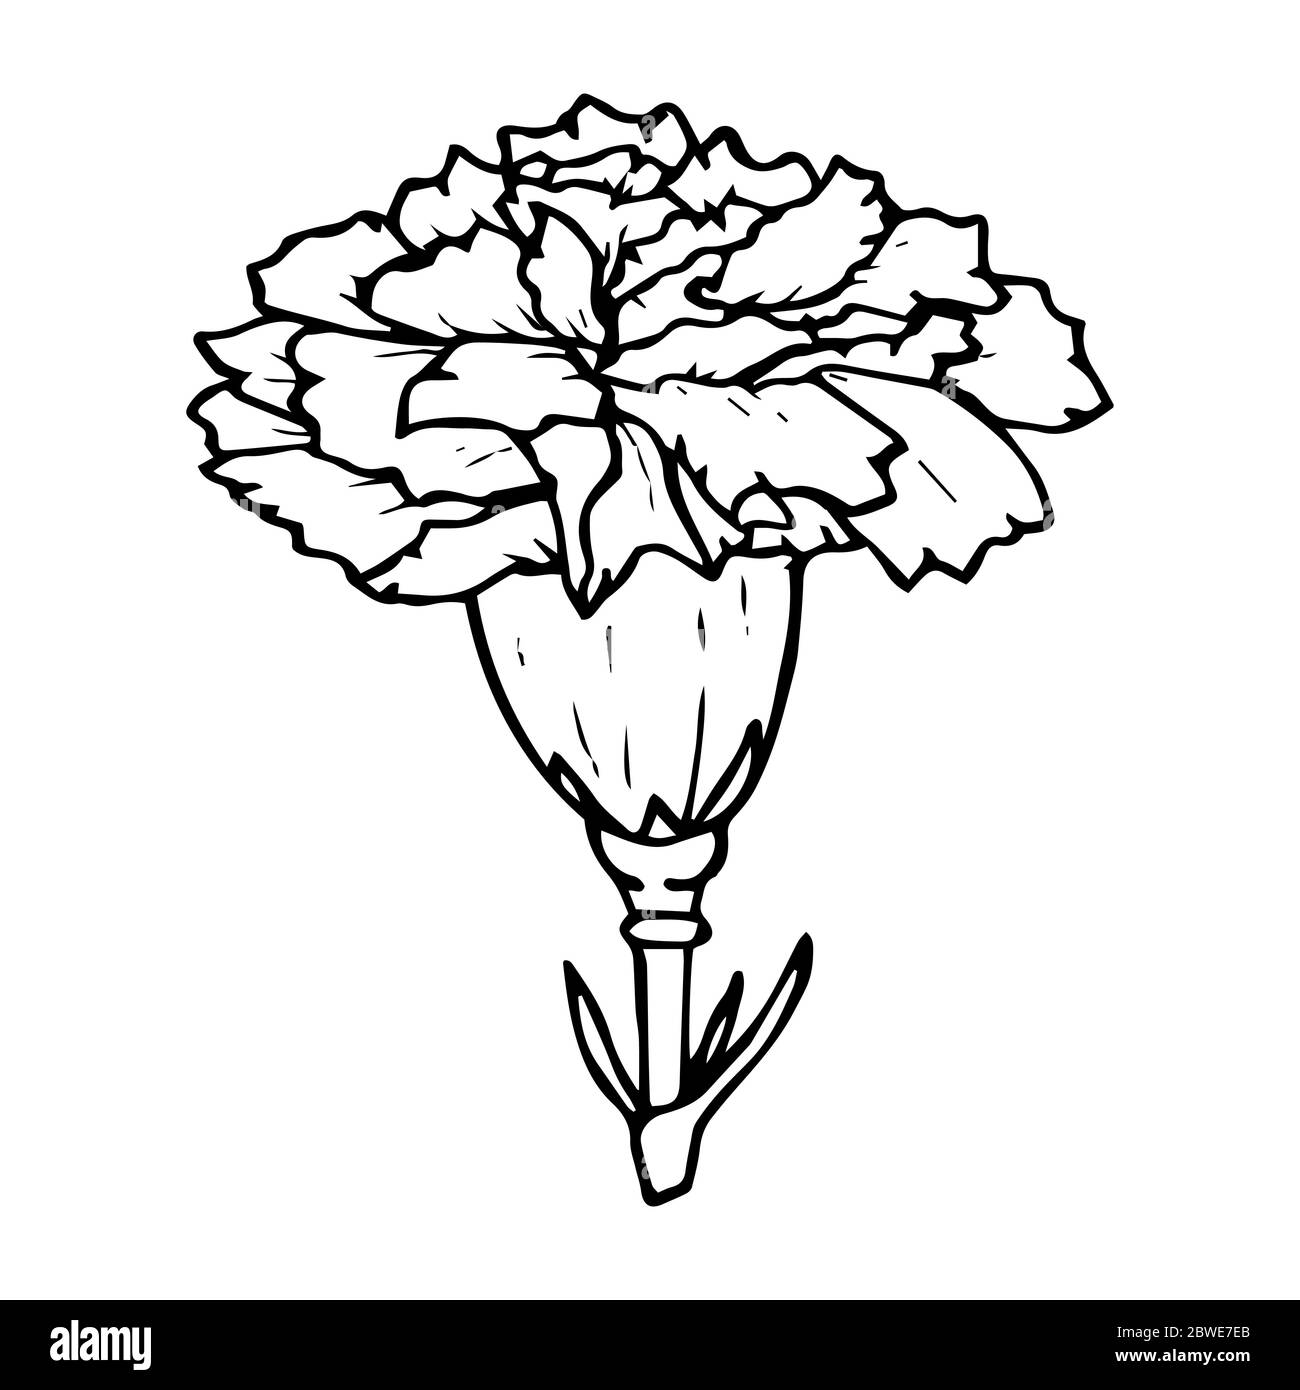 Disegno del contorno del fiore del garofano in nero isolato su sfondo bianco, illustrazione vettoriale del magazzino per disegno e decorazione, adesivo, modello, logo, Illustrazione Vettoriale